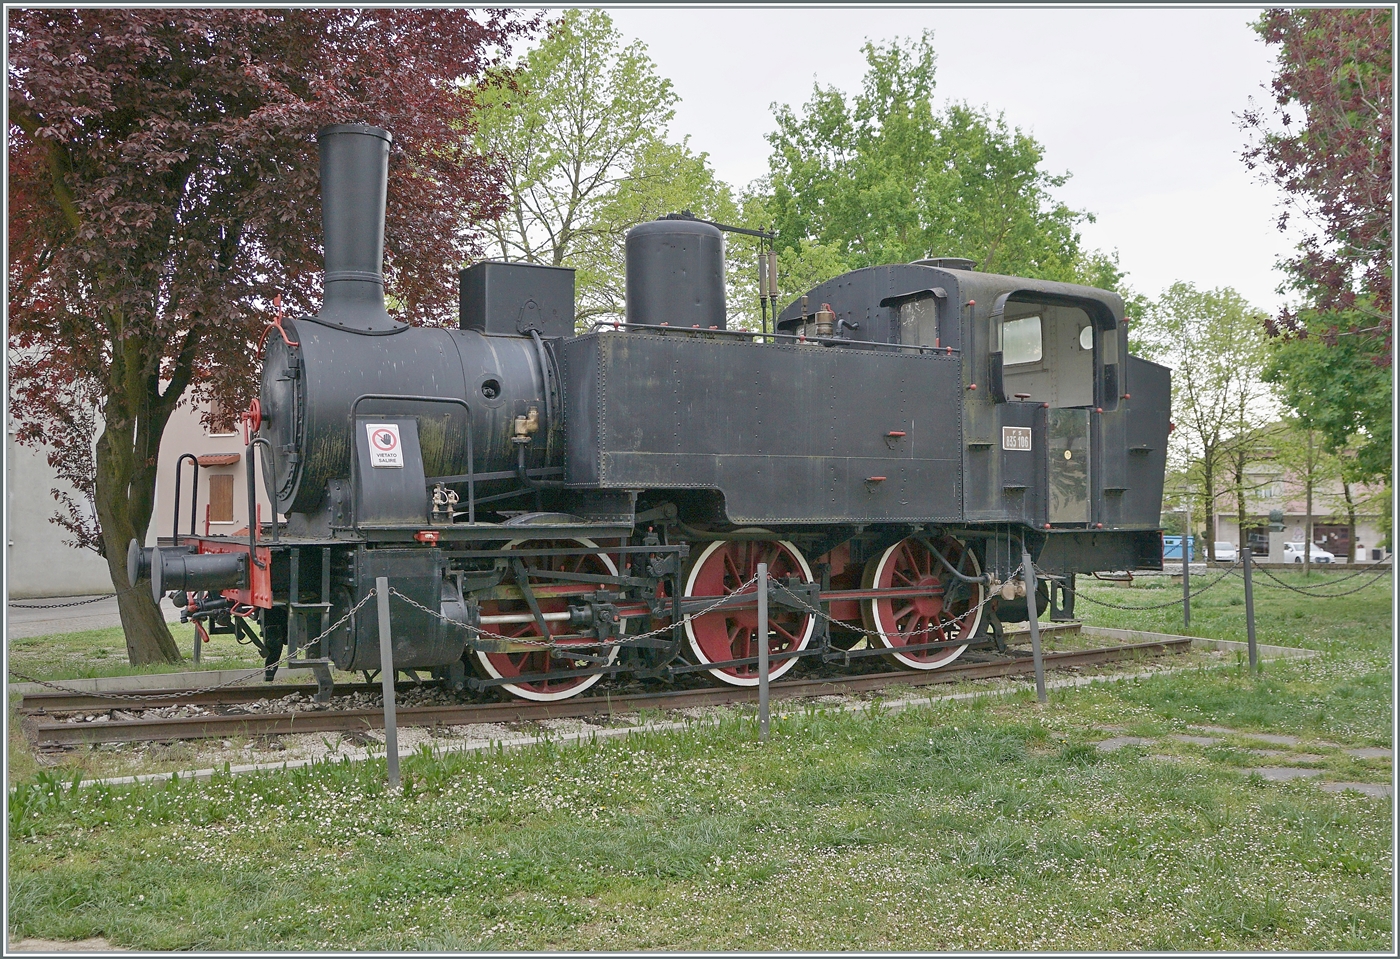 Diese kleine FS Dampflok mit der Nummer 835 106 steht in einem Park in Brescello. 

17. April 2023 